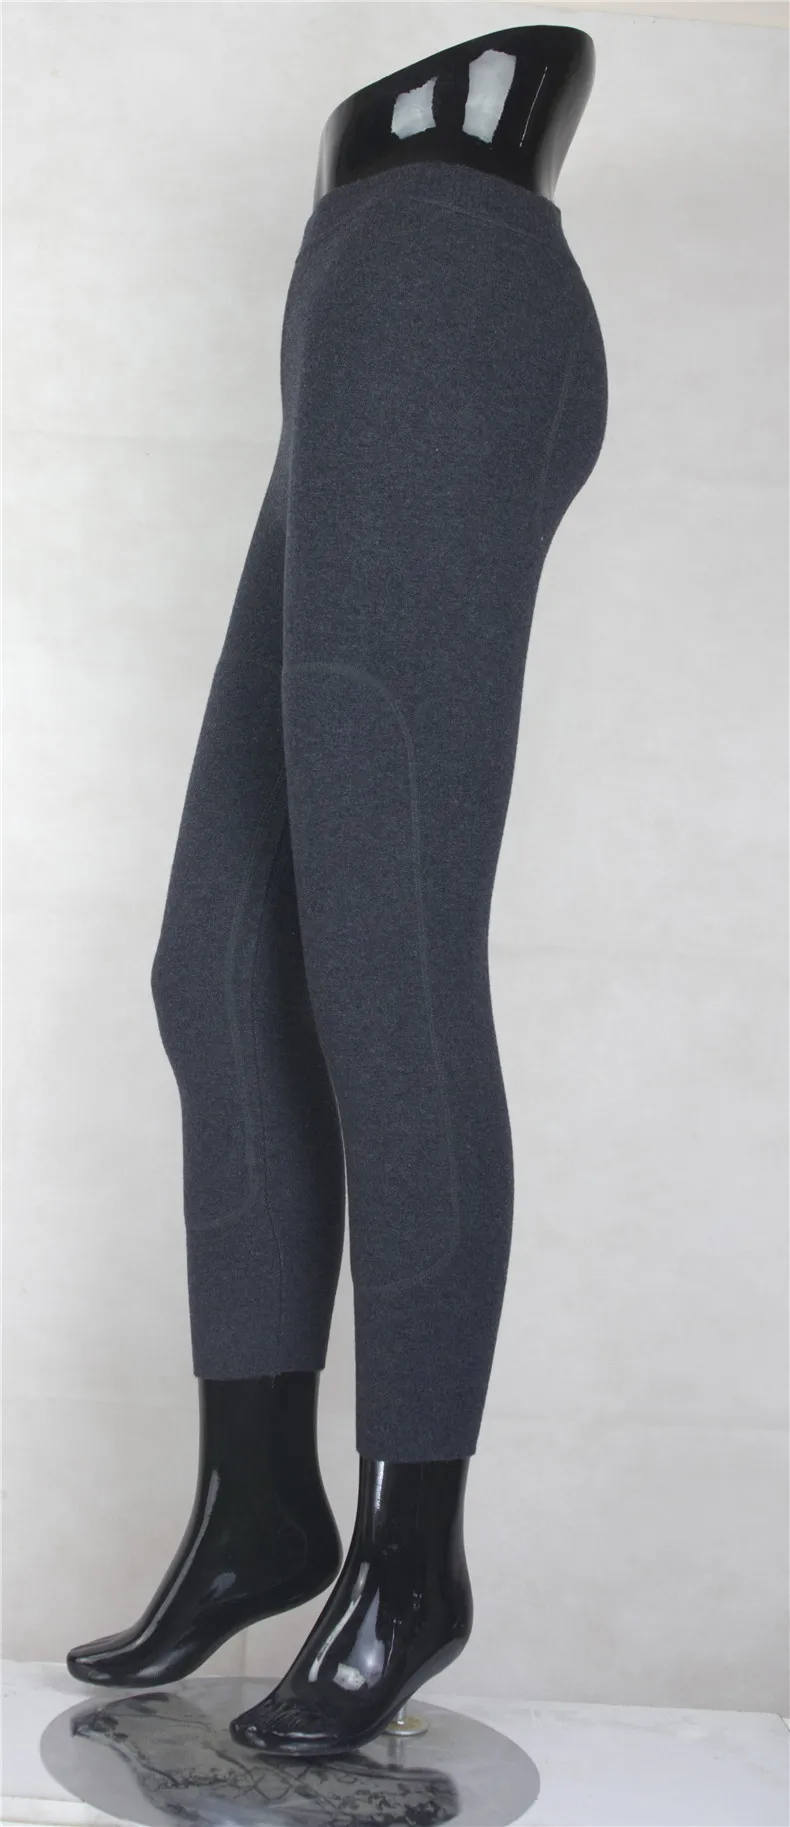 XJXKS Брендовые мужские высококачественные эластичные брюки длиной до щиколотки тяжеловесные мужские Леггинсы брюки осень-зима теплые Lrggings